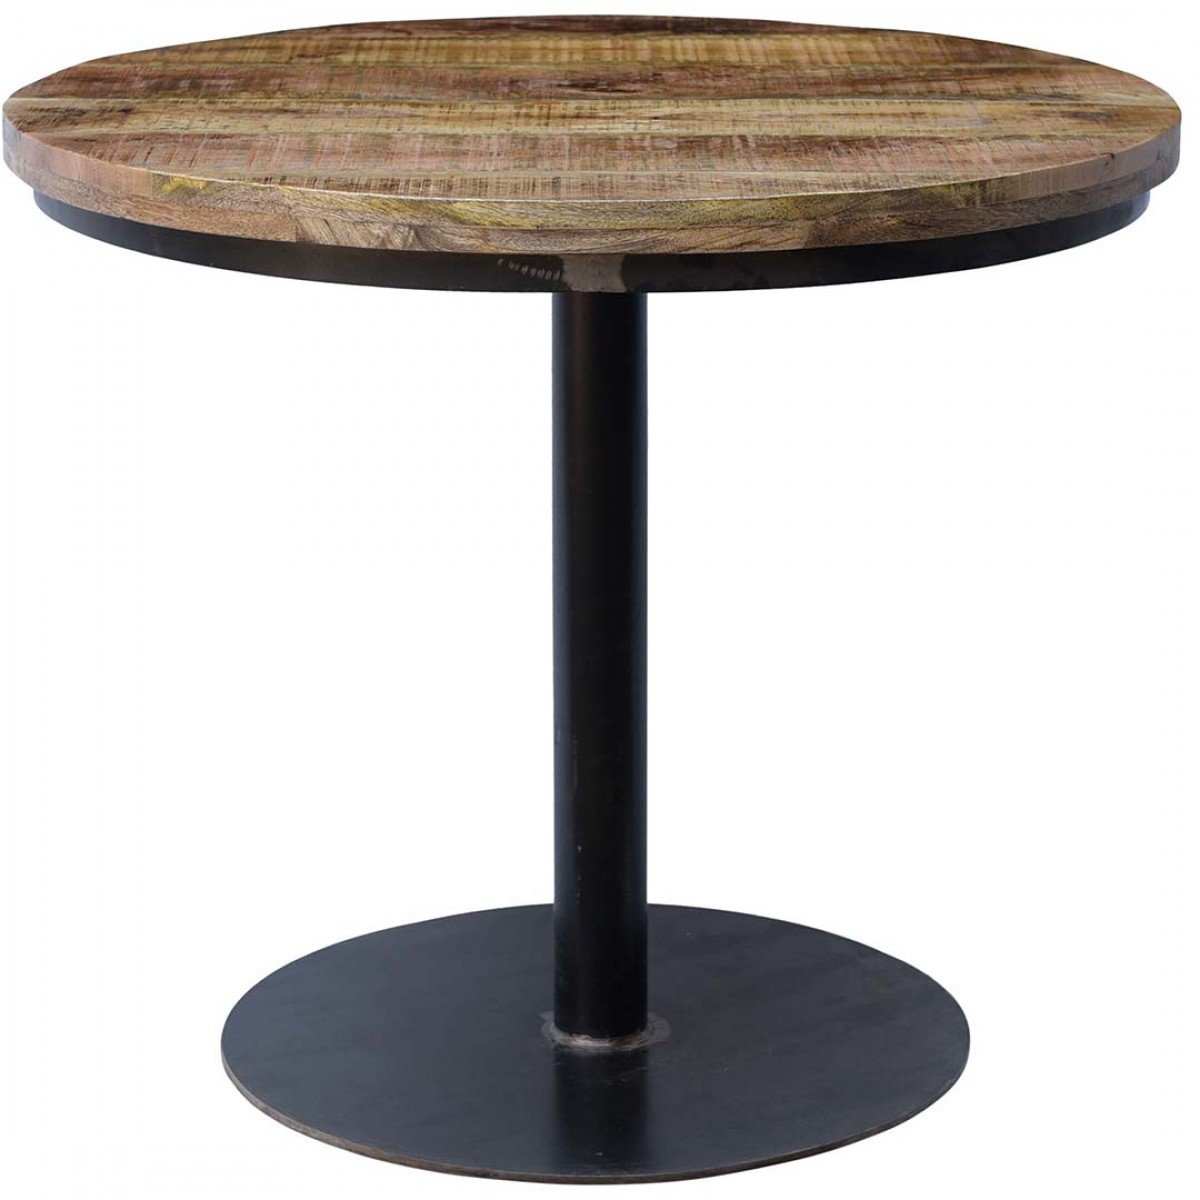 Jack στρογγυλό τραπέζι με μαύρη μεταλλική βάση και επιφάνεια από ξύλο μάνγκο σε φυσική απόχρωση 90x75 εκ